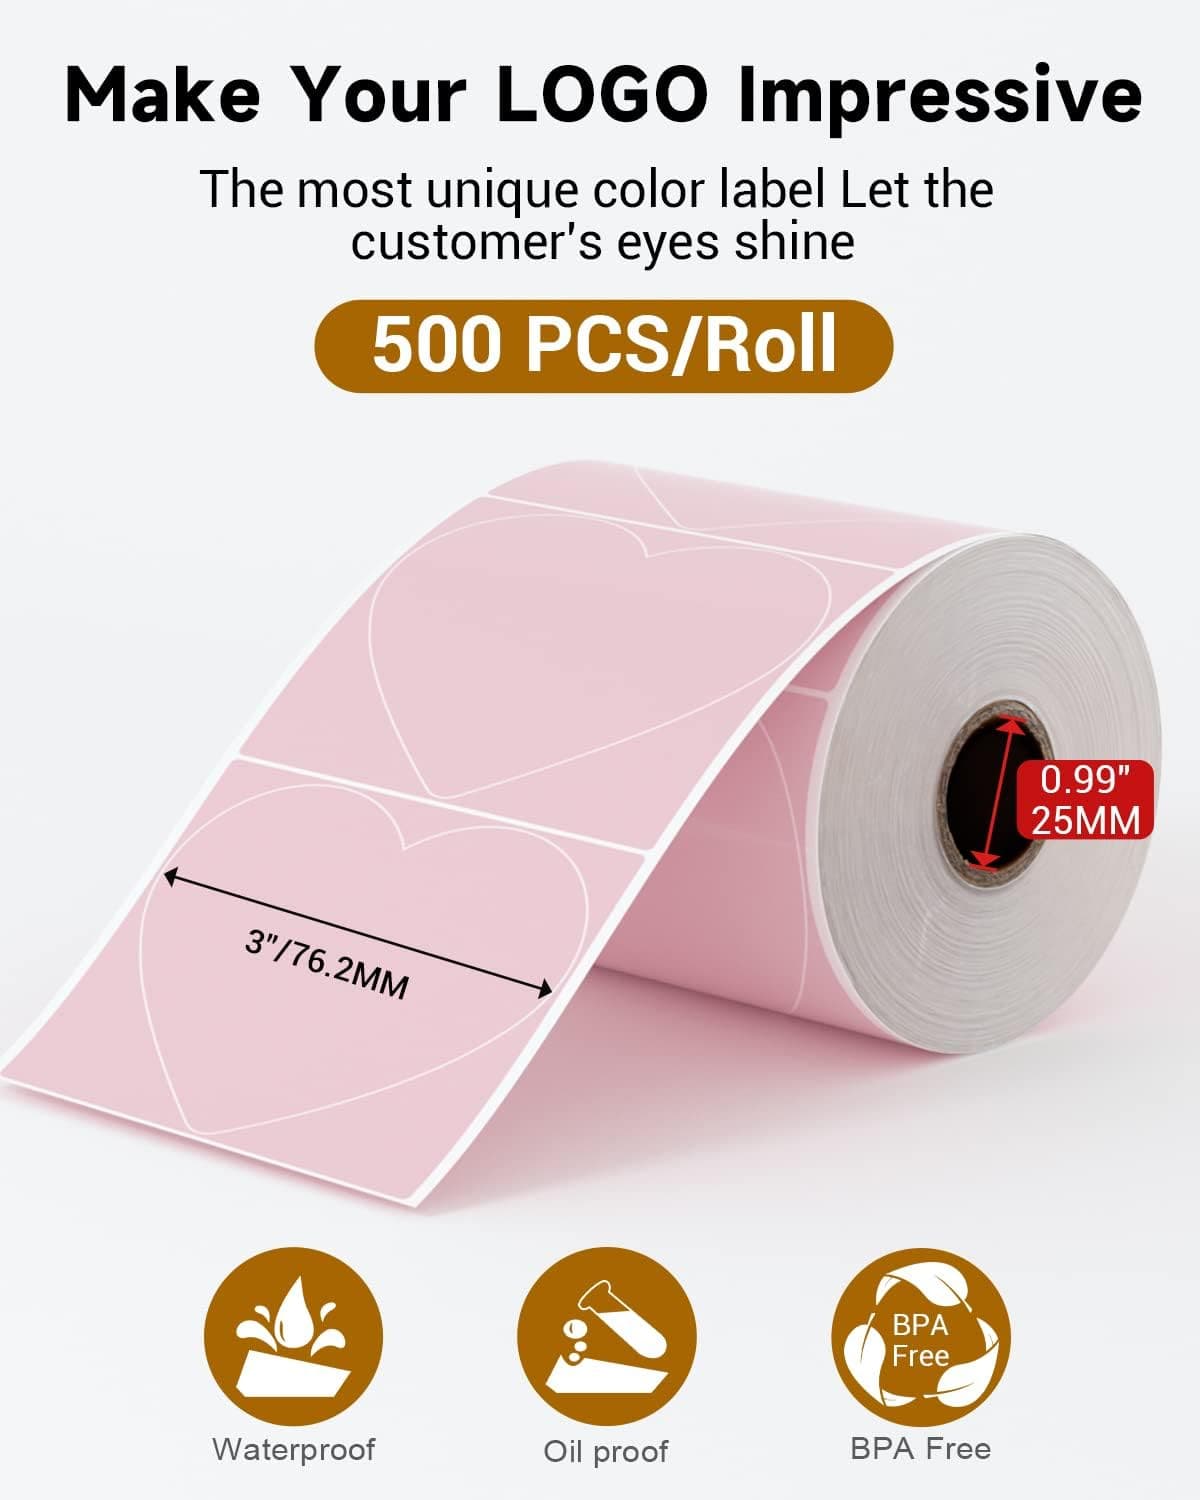 Phomemo 💘 Etichette termiche a cuore rosa da 3 pollici per stampante per etichette di spedizione